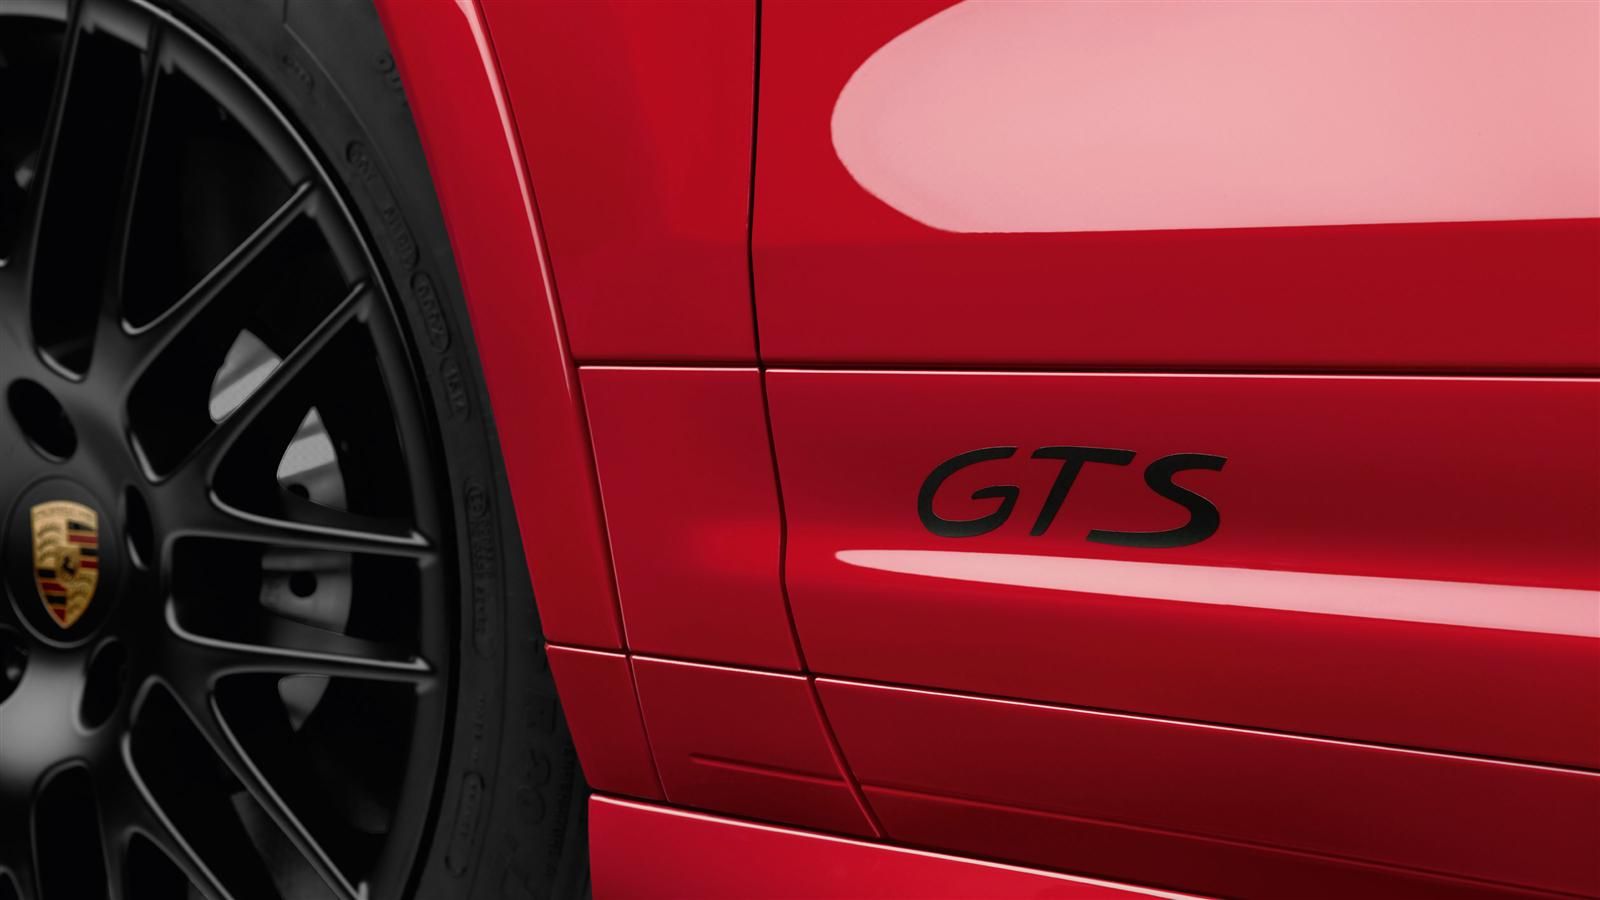 2015 Porsche Cayenne GTS